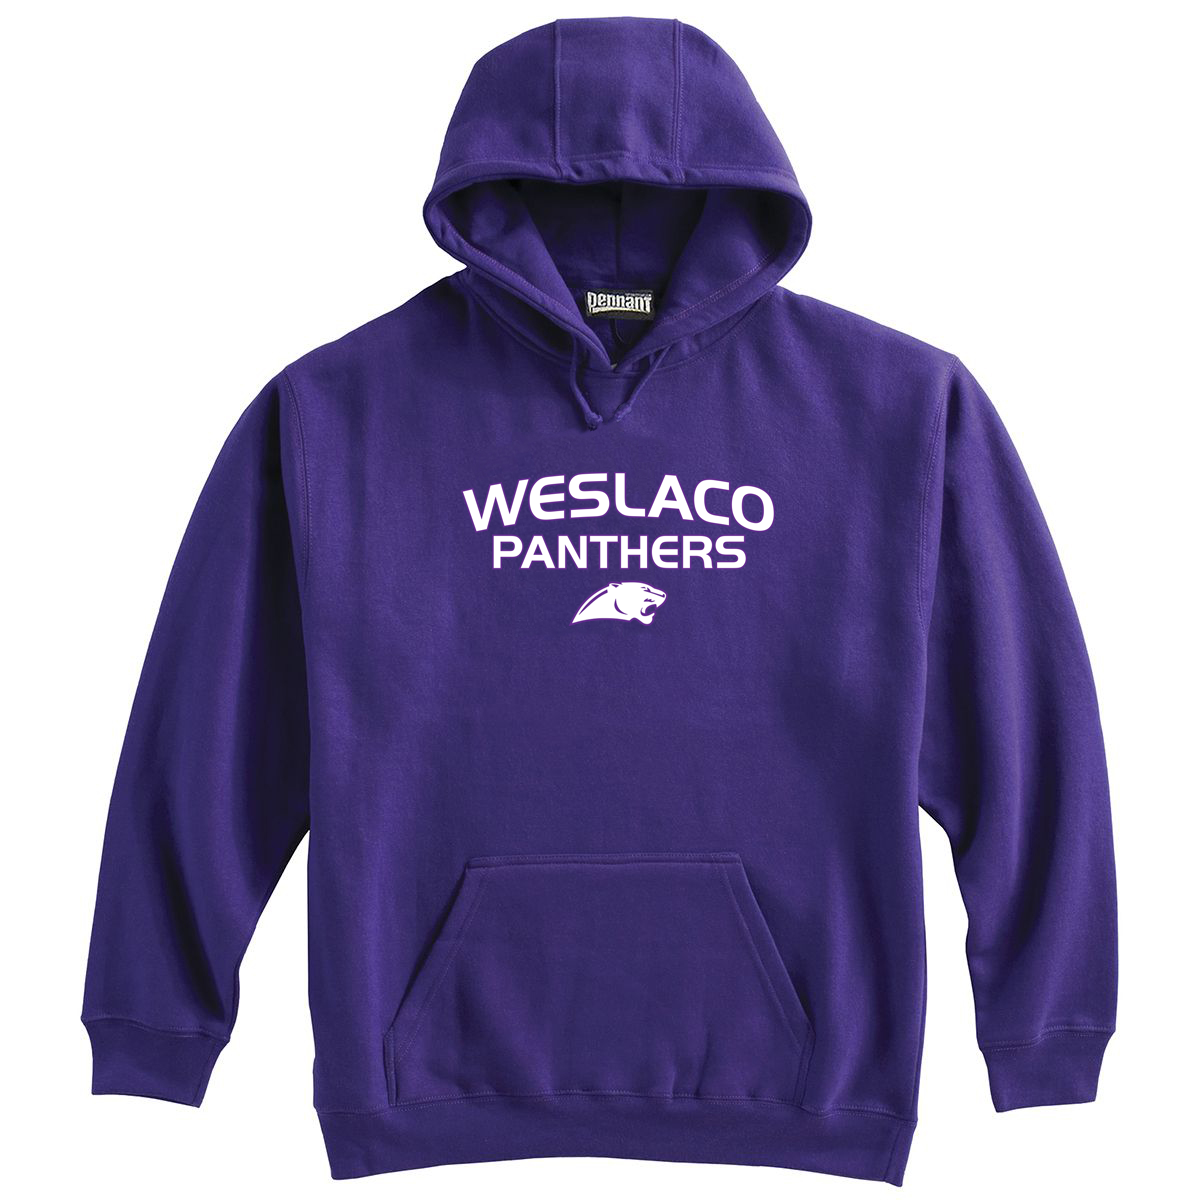 Weslaco Panthers Sweatshirt